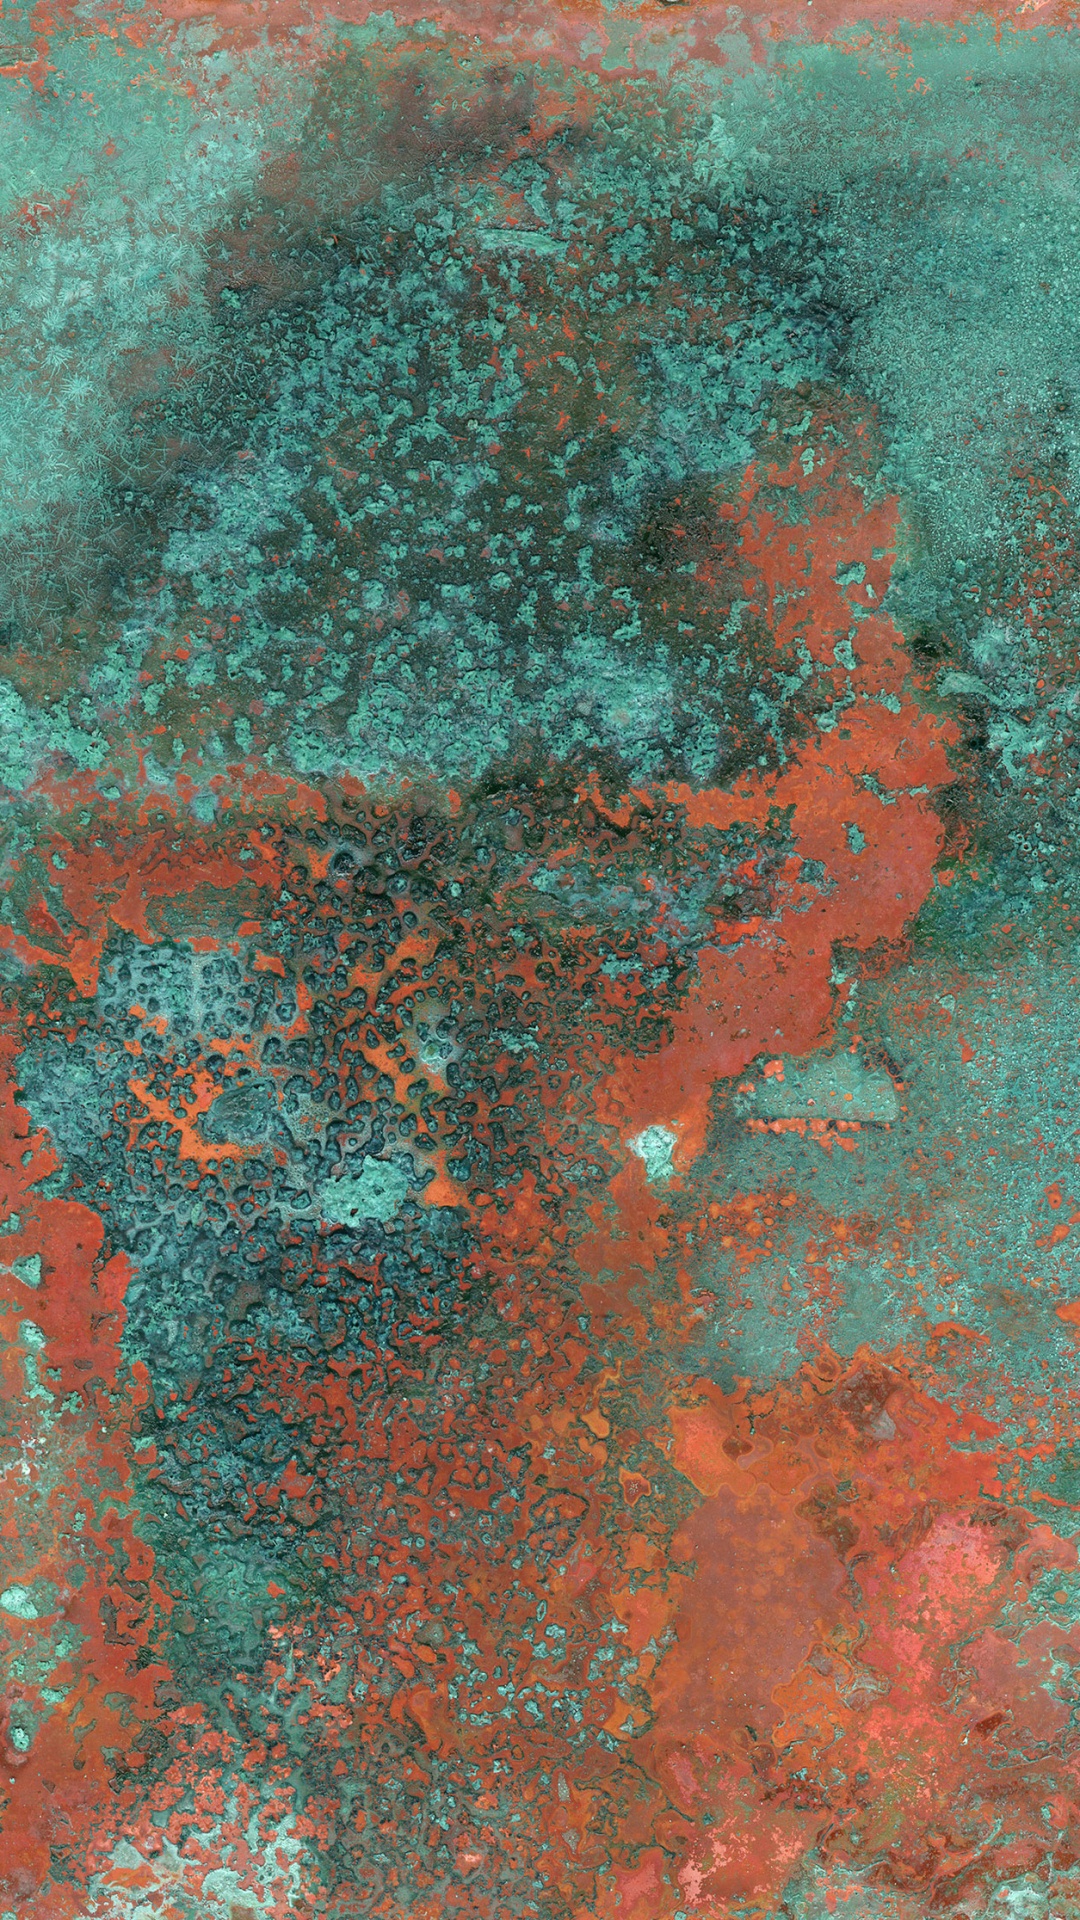 Peinture Abstraite Rouge et Blanche. Wallpaper in 1080x1920 Resolution